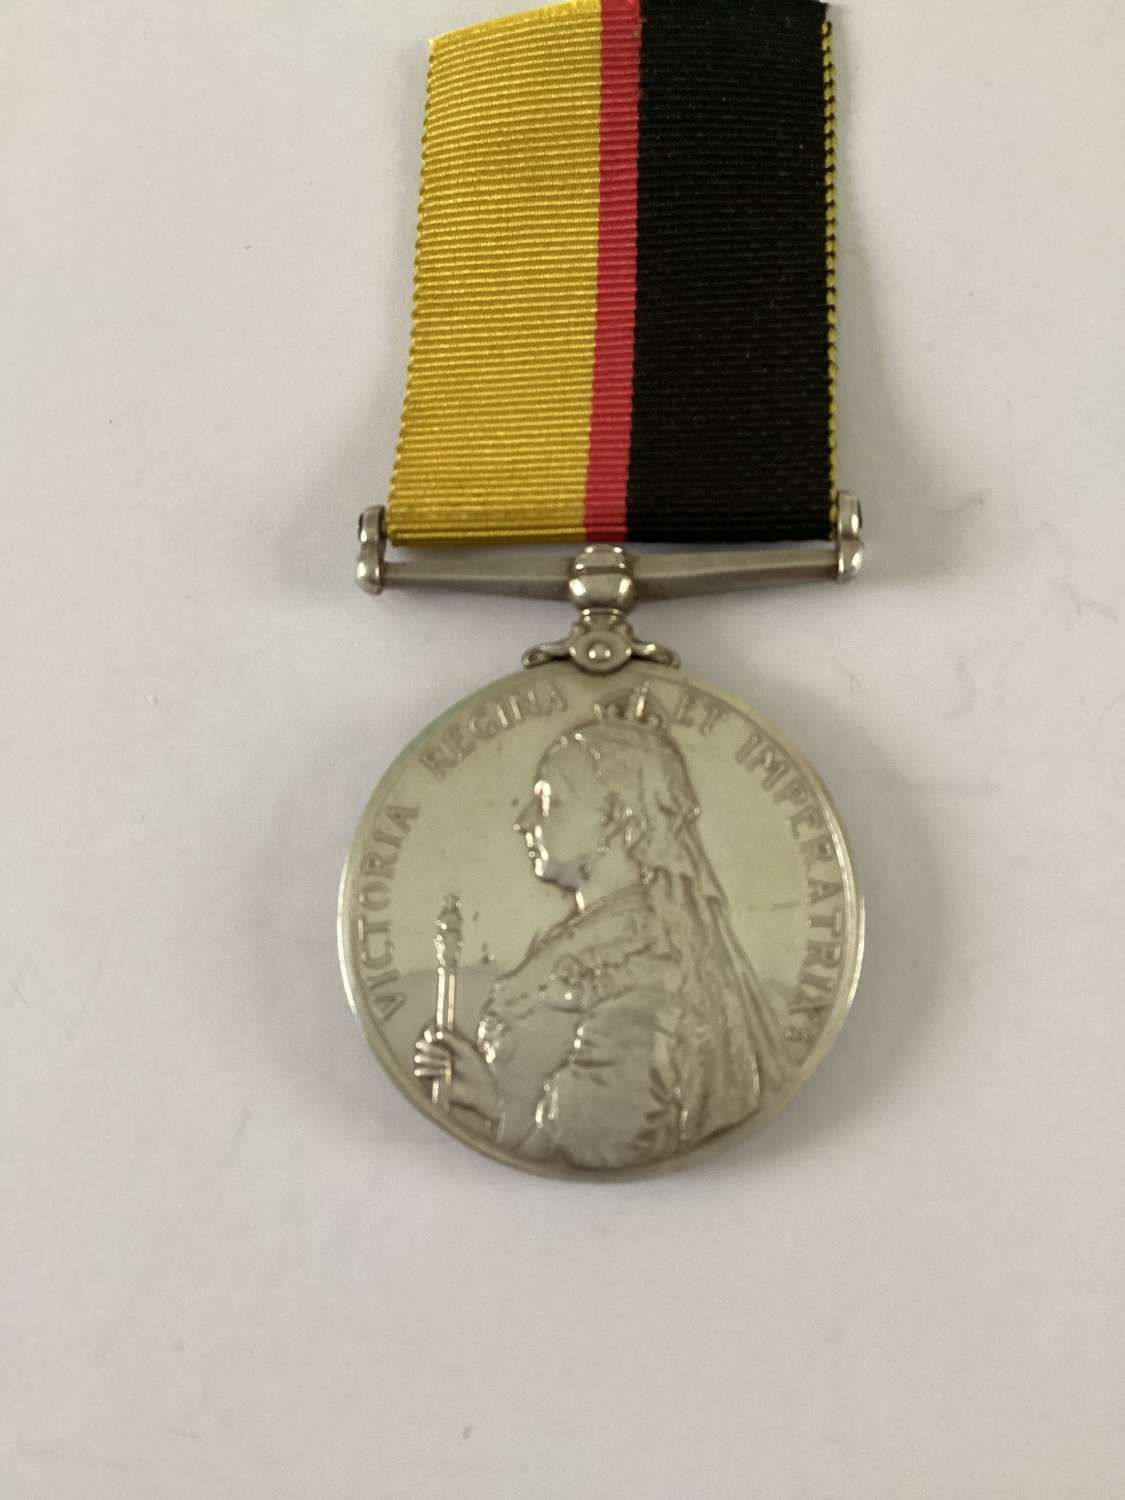 Queens Sudan Medal 1899 in silver,